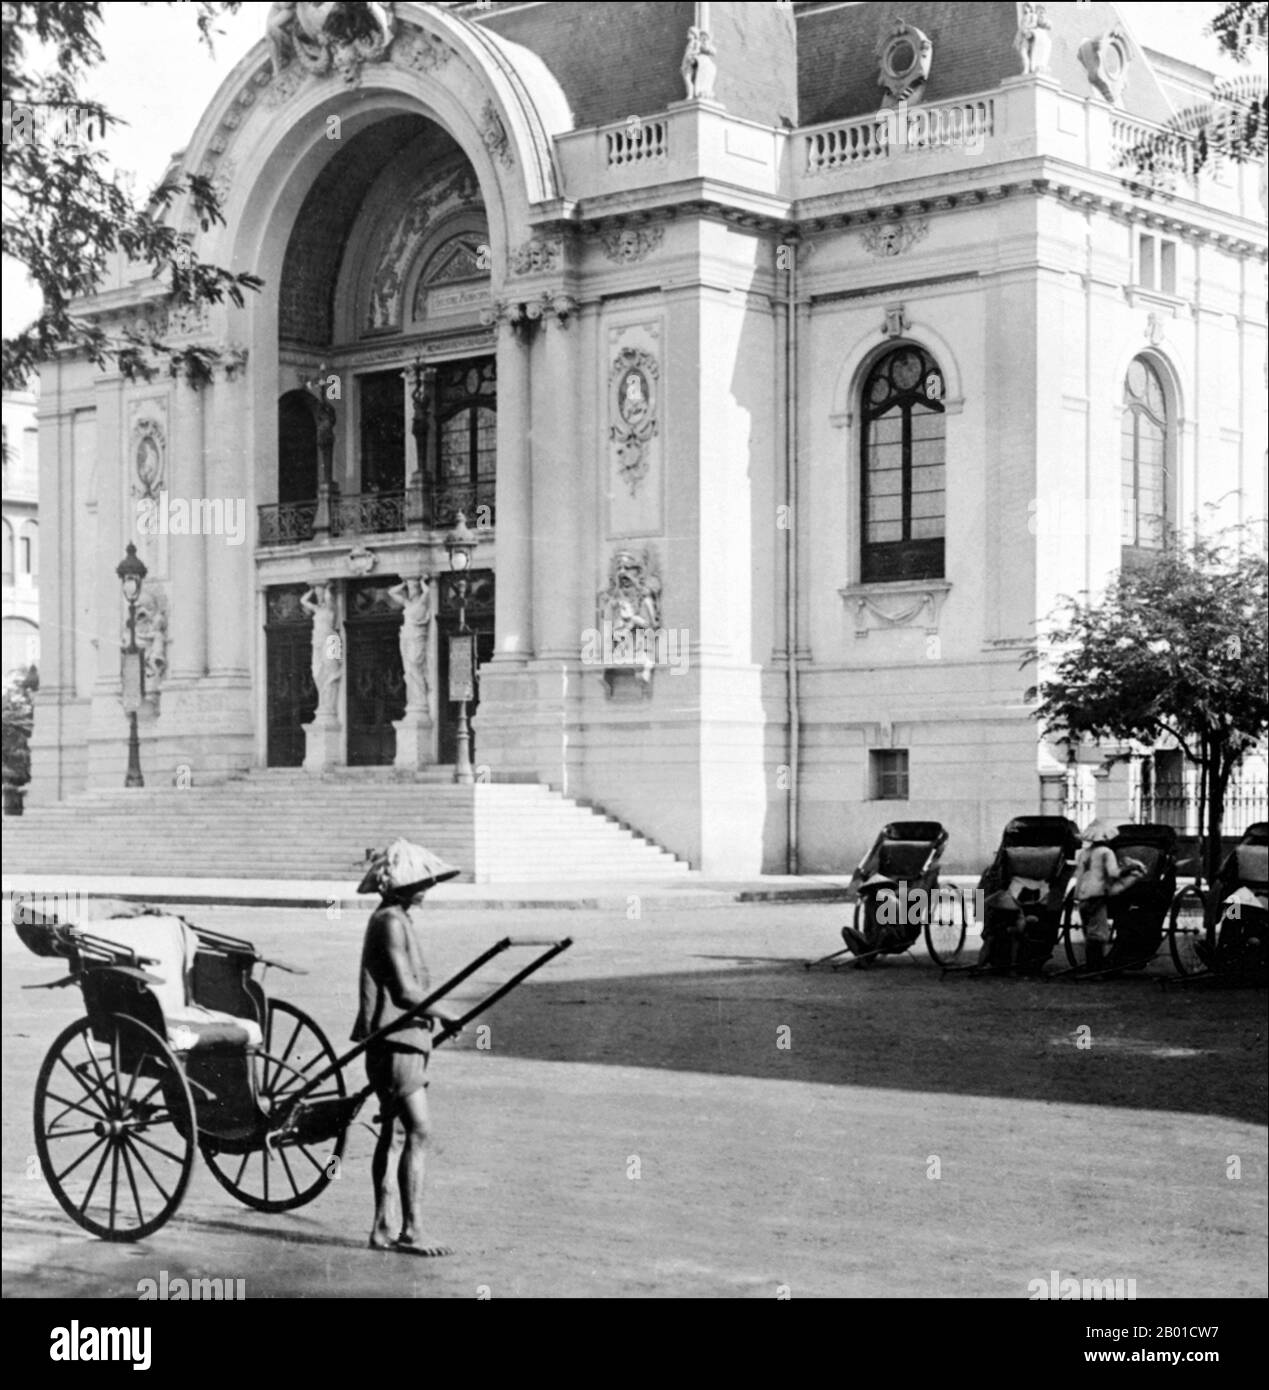 Vietnam : pousse-pousse devant le Théâtre municipal des Beaux-Arts, également appelé Opéra de Saigon, Saigon, 1915. L'Opéra de Saigon (en vietnamien: Thành phố Hồ Chí Minh), un opéra de Ho Chi Minh ville, au Vietnam, est un exemple de l'architecture coloniale française au Vietnam. Construit en 1897 par l'architecte français Ferret Eugene, le bâtiment de 800 sièges fut utilisé comme la maison de l'assemblée de la Chambre basse du Vietnam du Sud après 1956. Ce n'est qu'en 1975 qu'il a été de nouveau utilisé comme théâtre et restauré en 1995. Banque D'Images